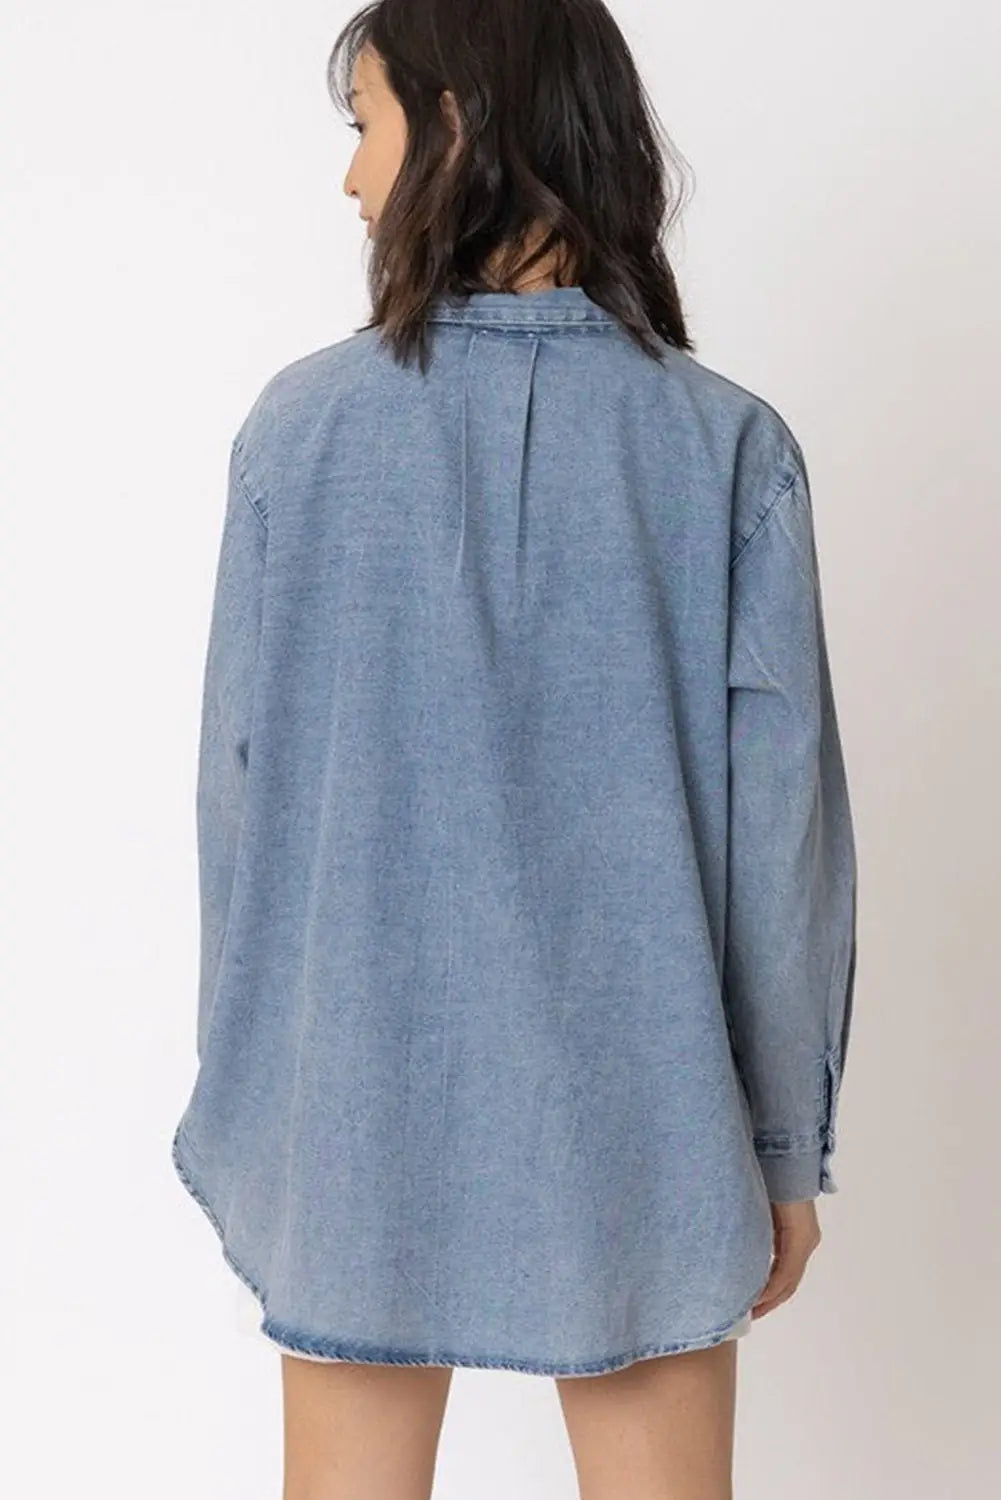 Sky blue vintage washed chest pocket denim shirt - tops